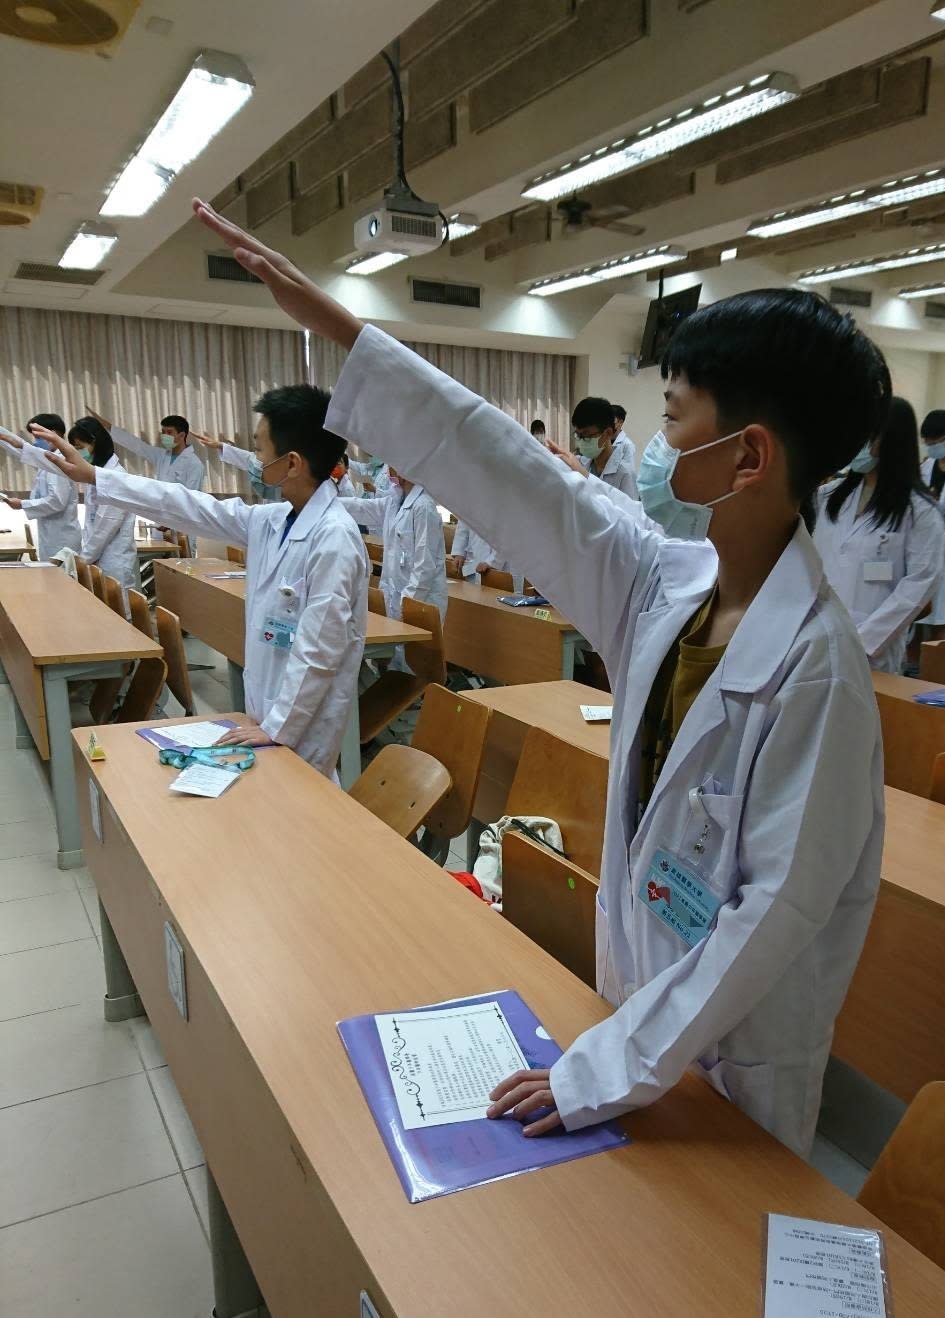 高醫大舉辦少年醫學營 啟發國中生對醫學興趣